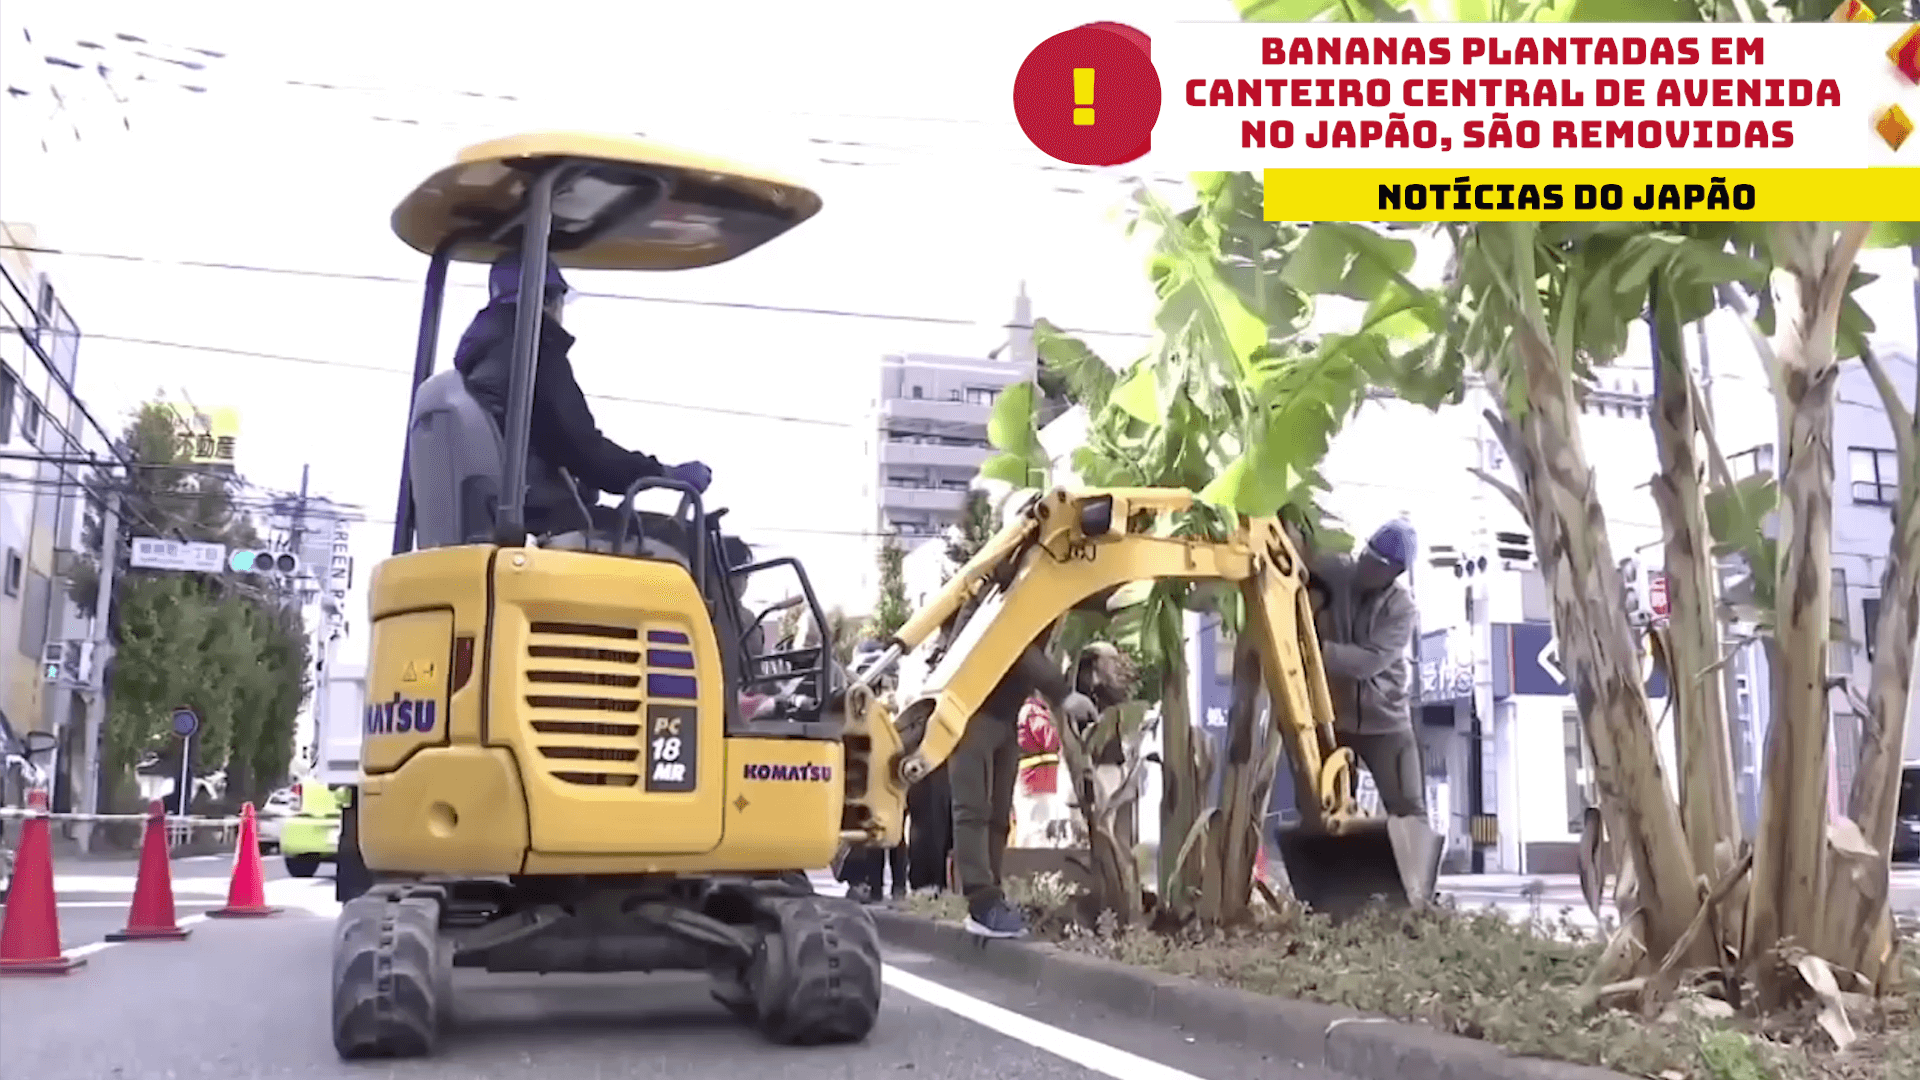 Bananas plantadas em canteiro central de avenida no Japão, são removidas 